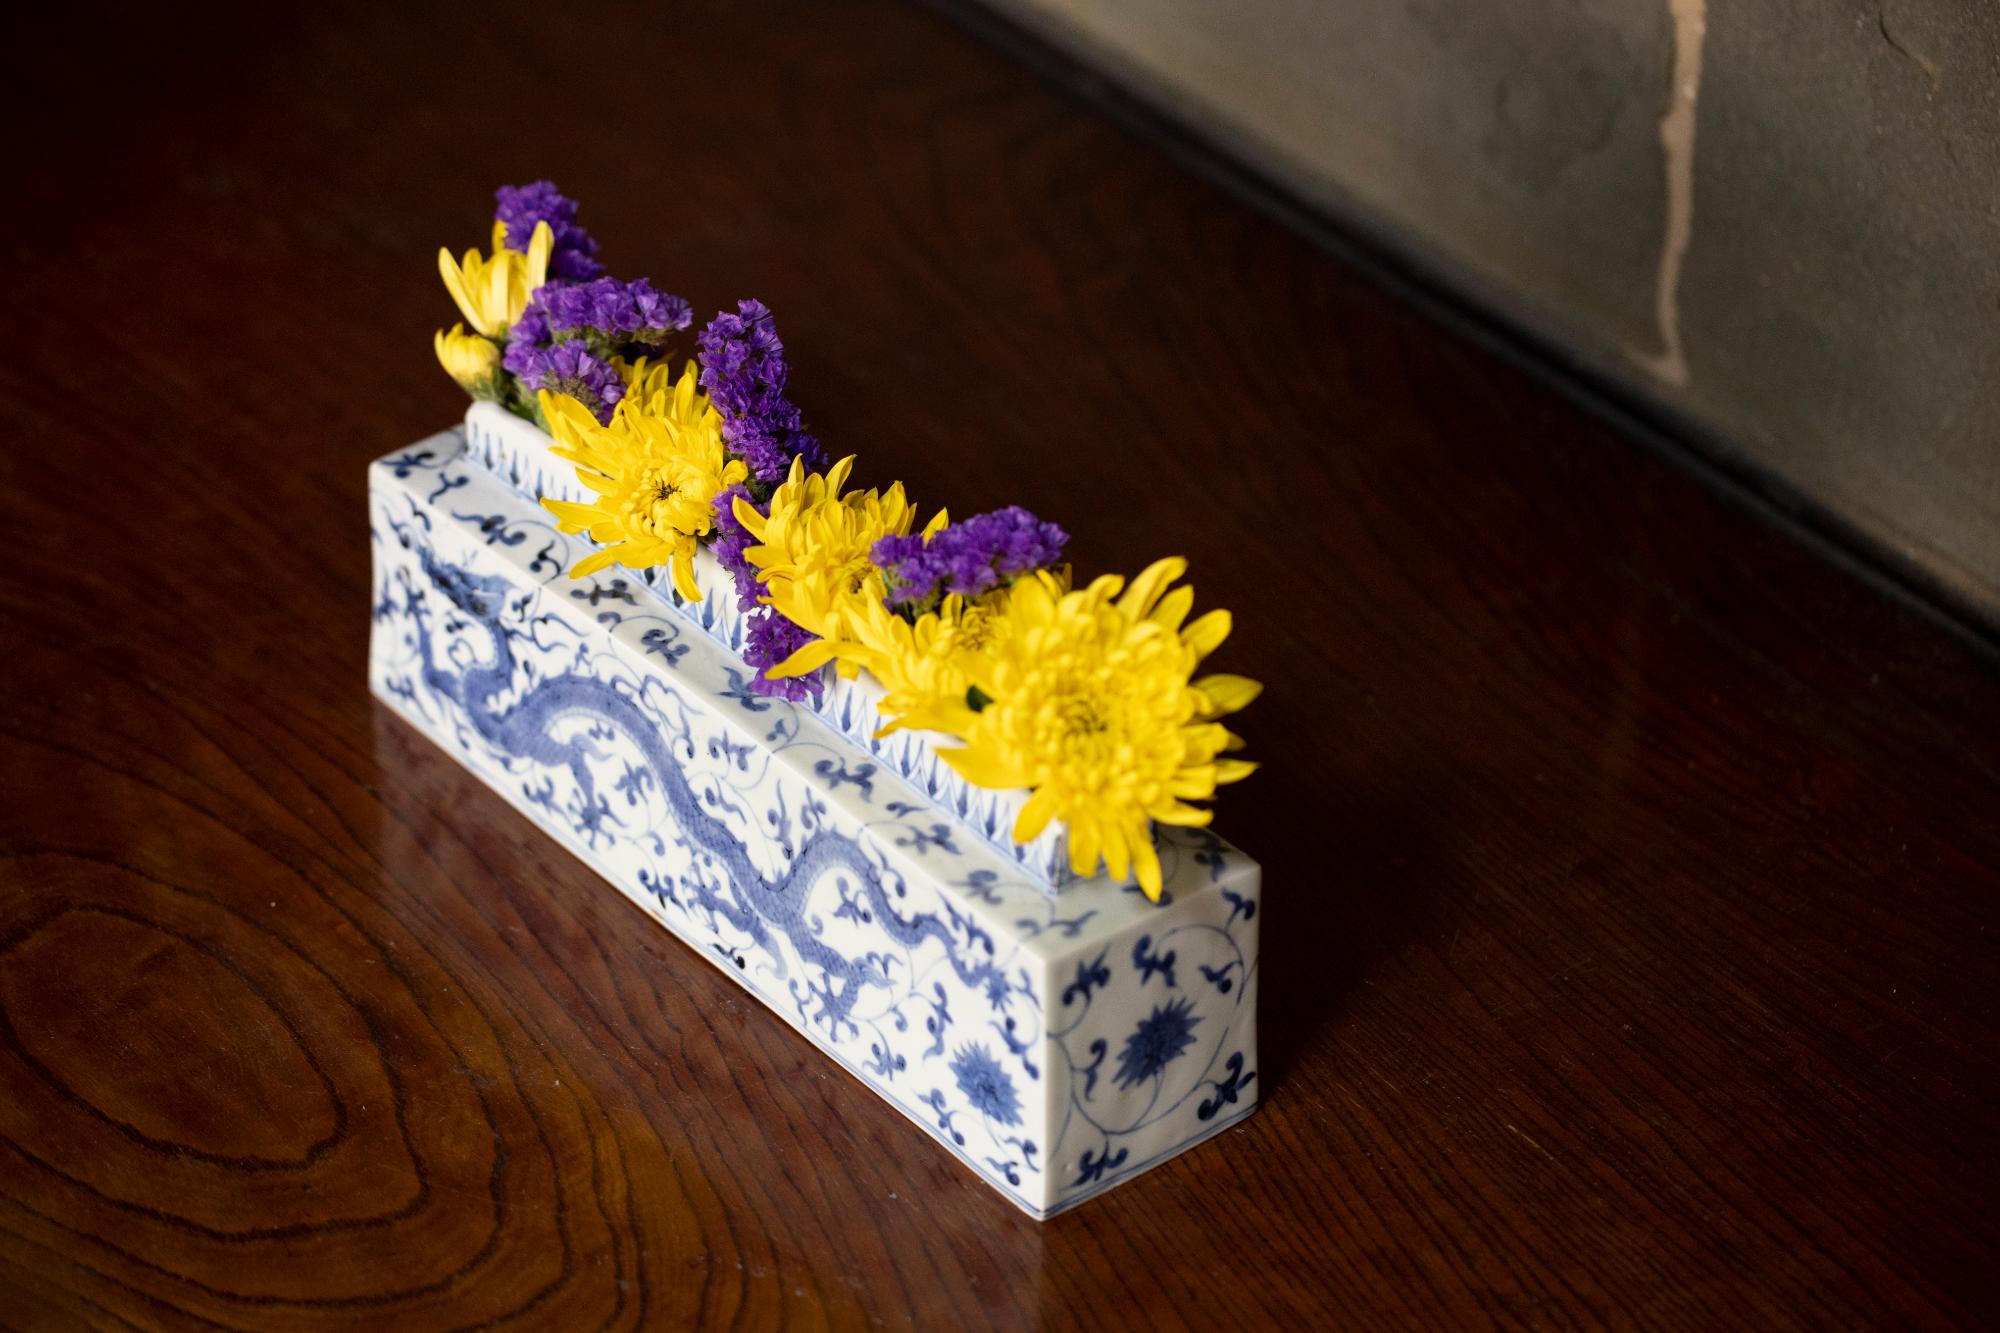 龍の文様が描かれた花器に黄色と紫の花がいけてある